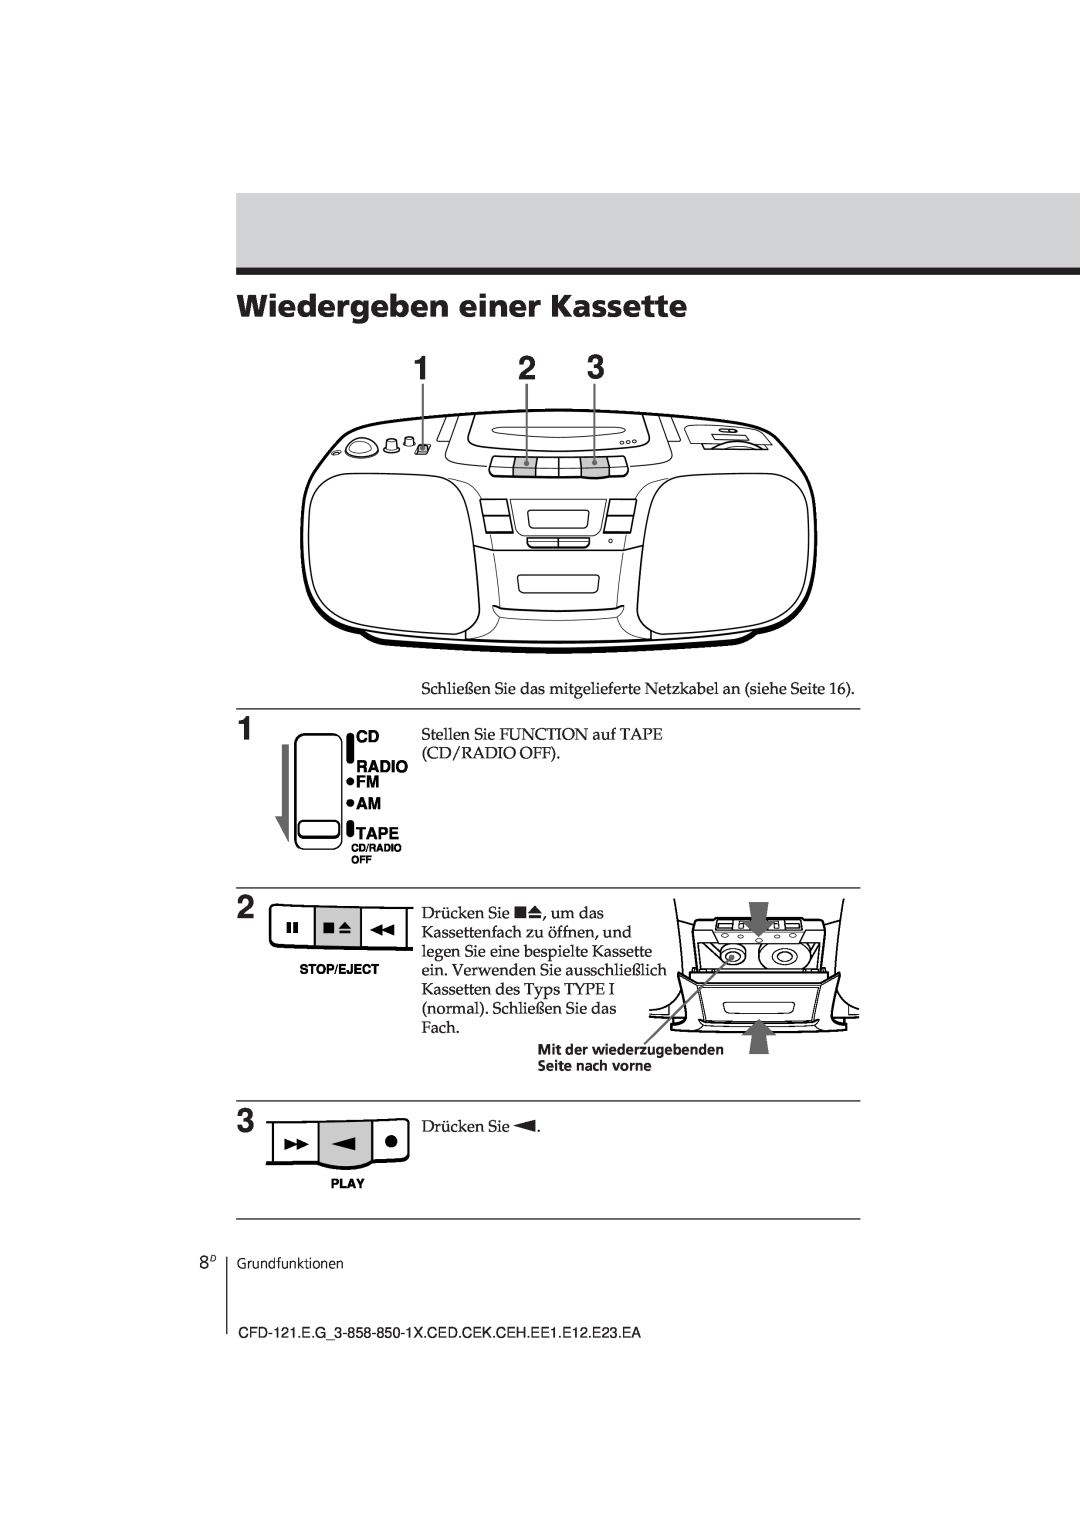 Sony CFD-121 operating instructions Wiedergeben einer Kassette 